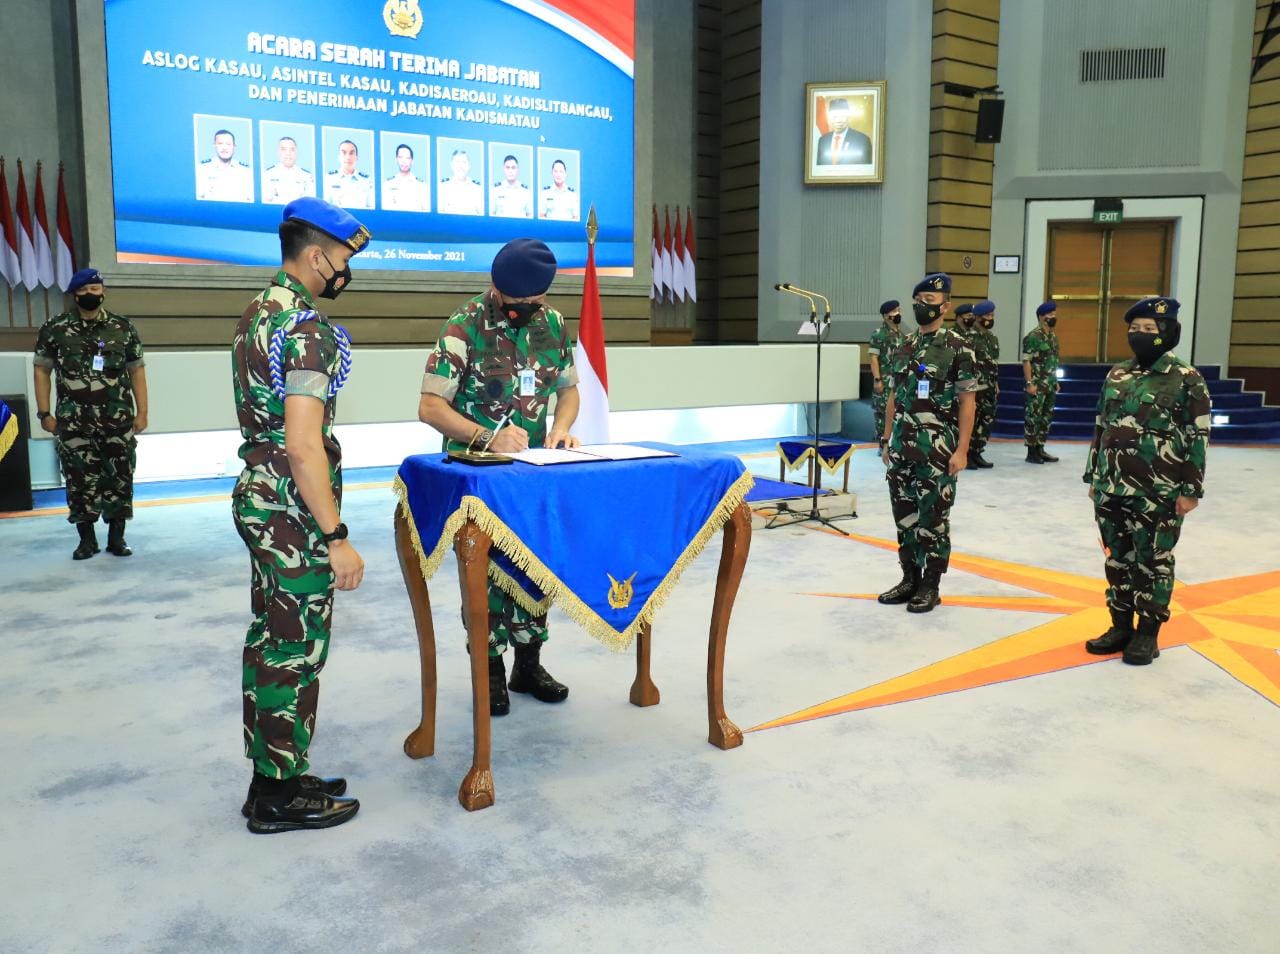 KSAU Pimpin Upacara Serah Terima Jabatan Pejabat TNI AU dan Penerimaan Jabatan Kadismatau